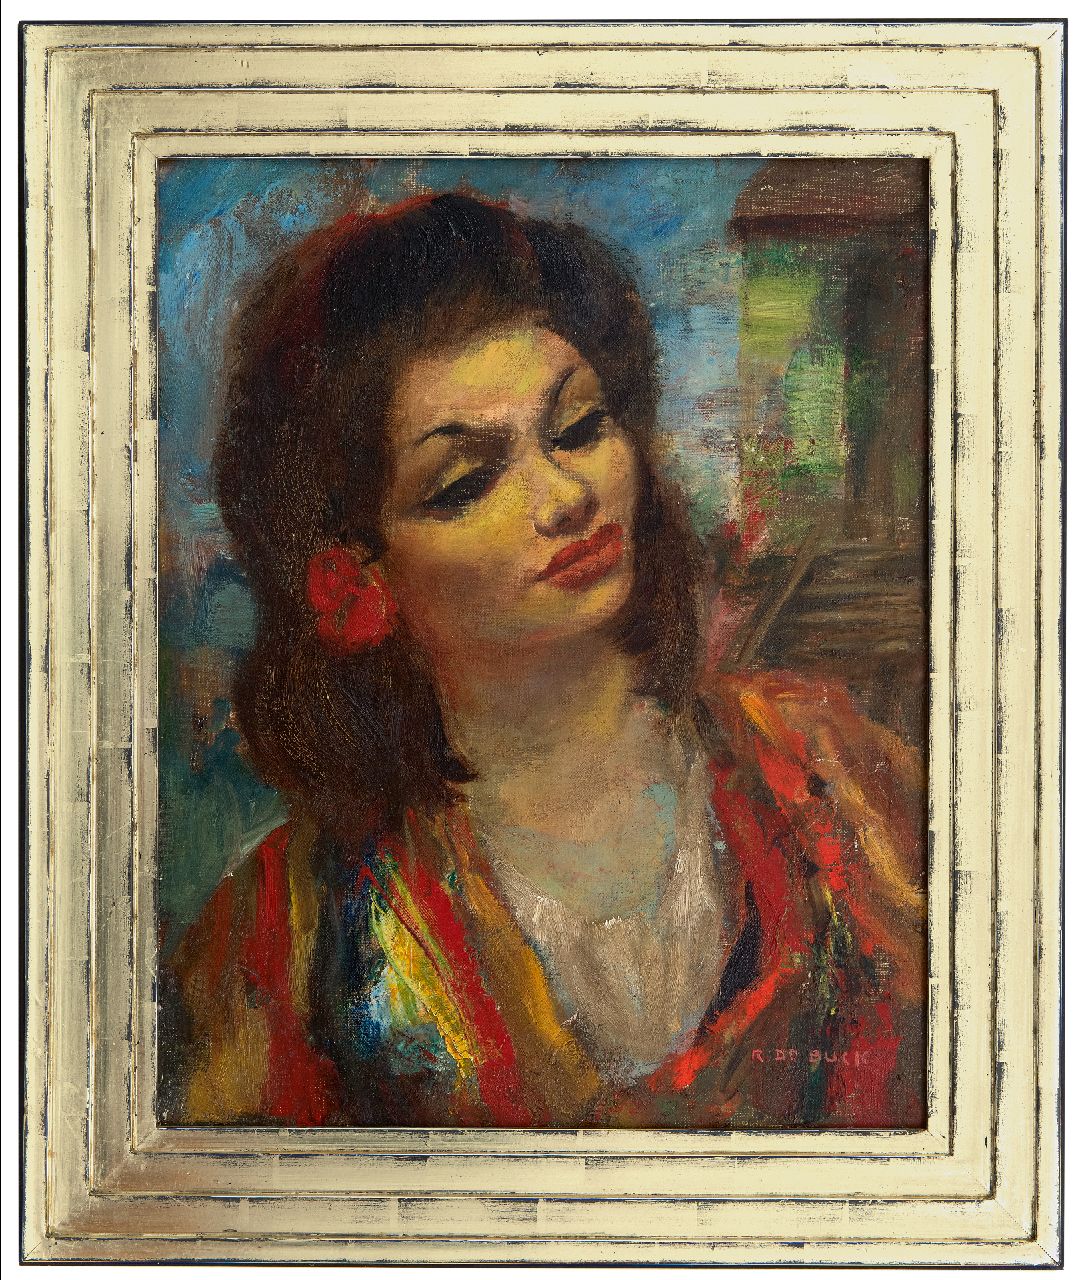 Buck R. de | Raphaël de Buck | Schilderijen te koop aangeboden | Zigeunerdanseres, olieverf op doek 50,4 x 40,5 cm, gesigneerd rechtsonder